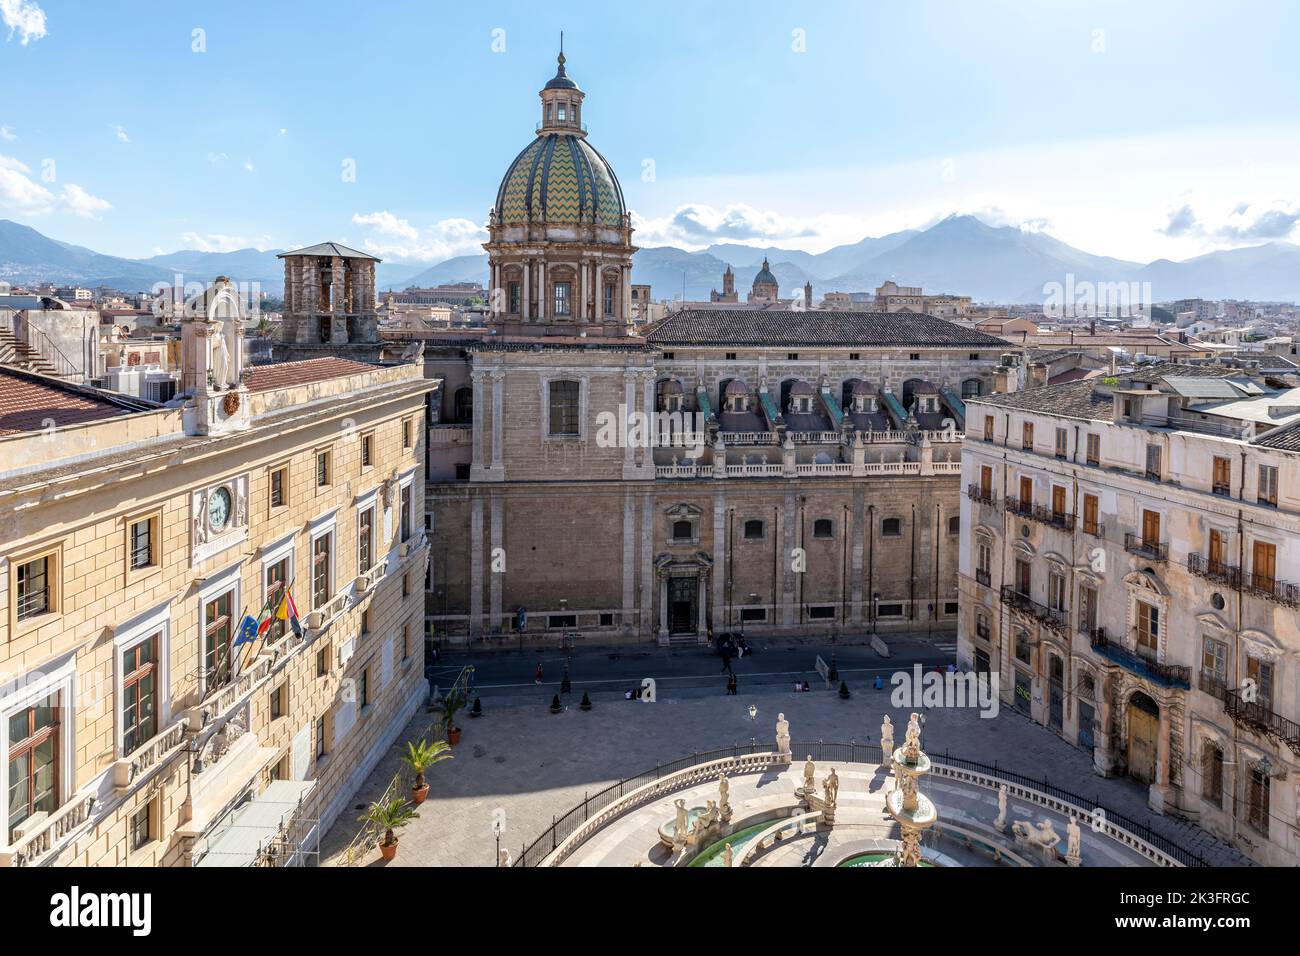 Palermo, Italy - July 7, 2020: Panoramic view of Piazza Pretoria or Piazza della Vergogna, Palermo, Sicily Stock Photo